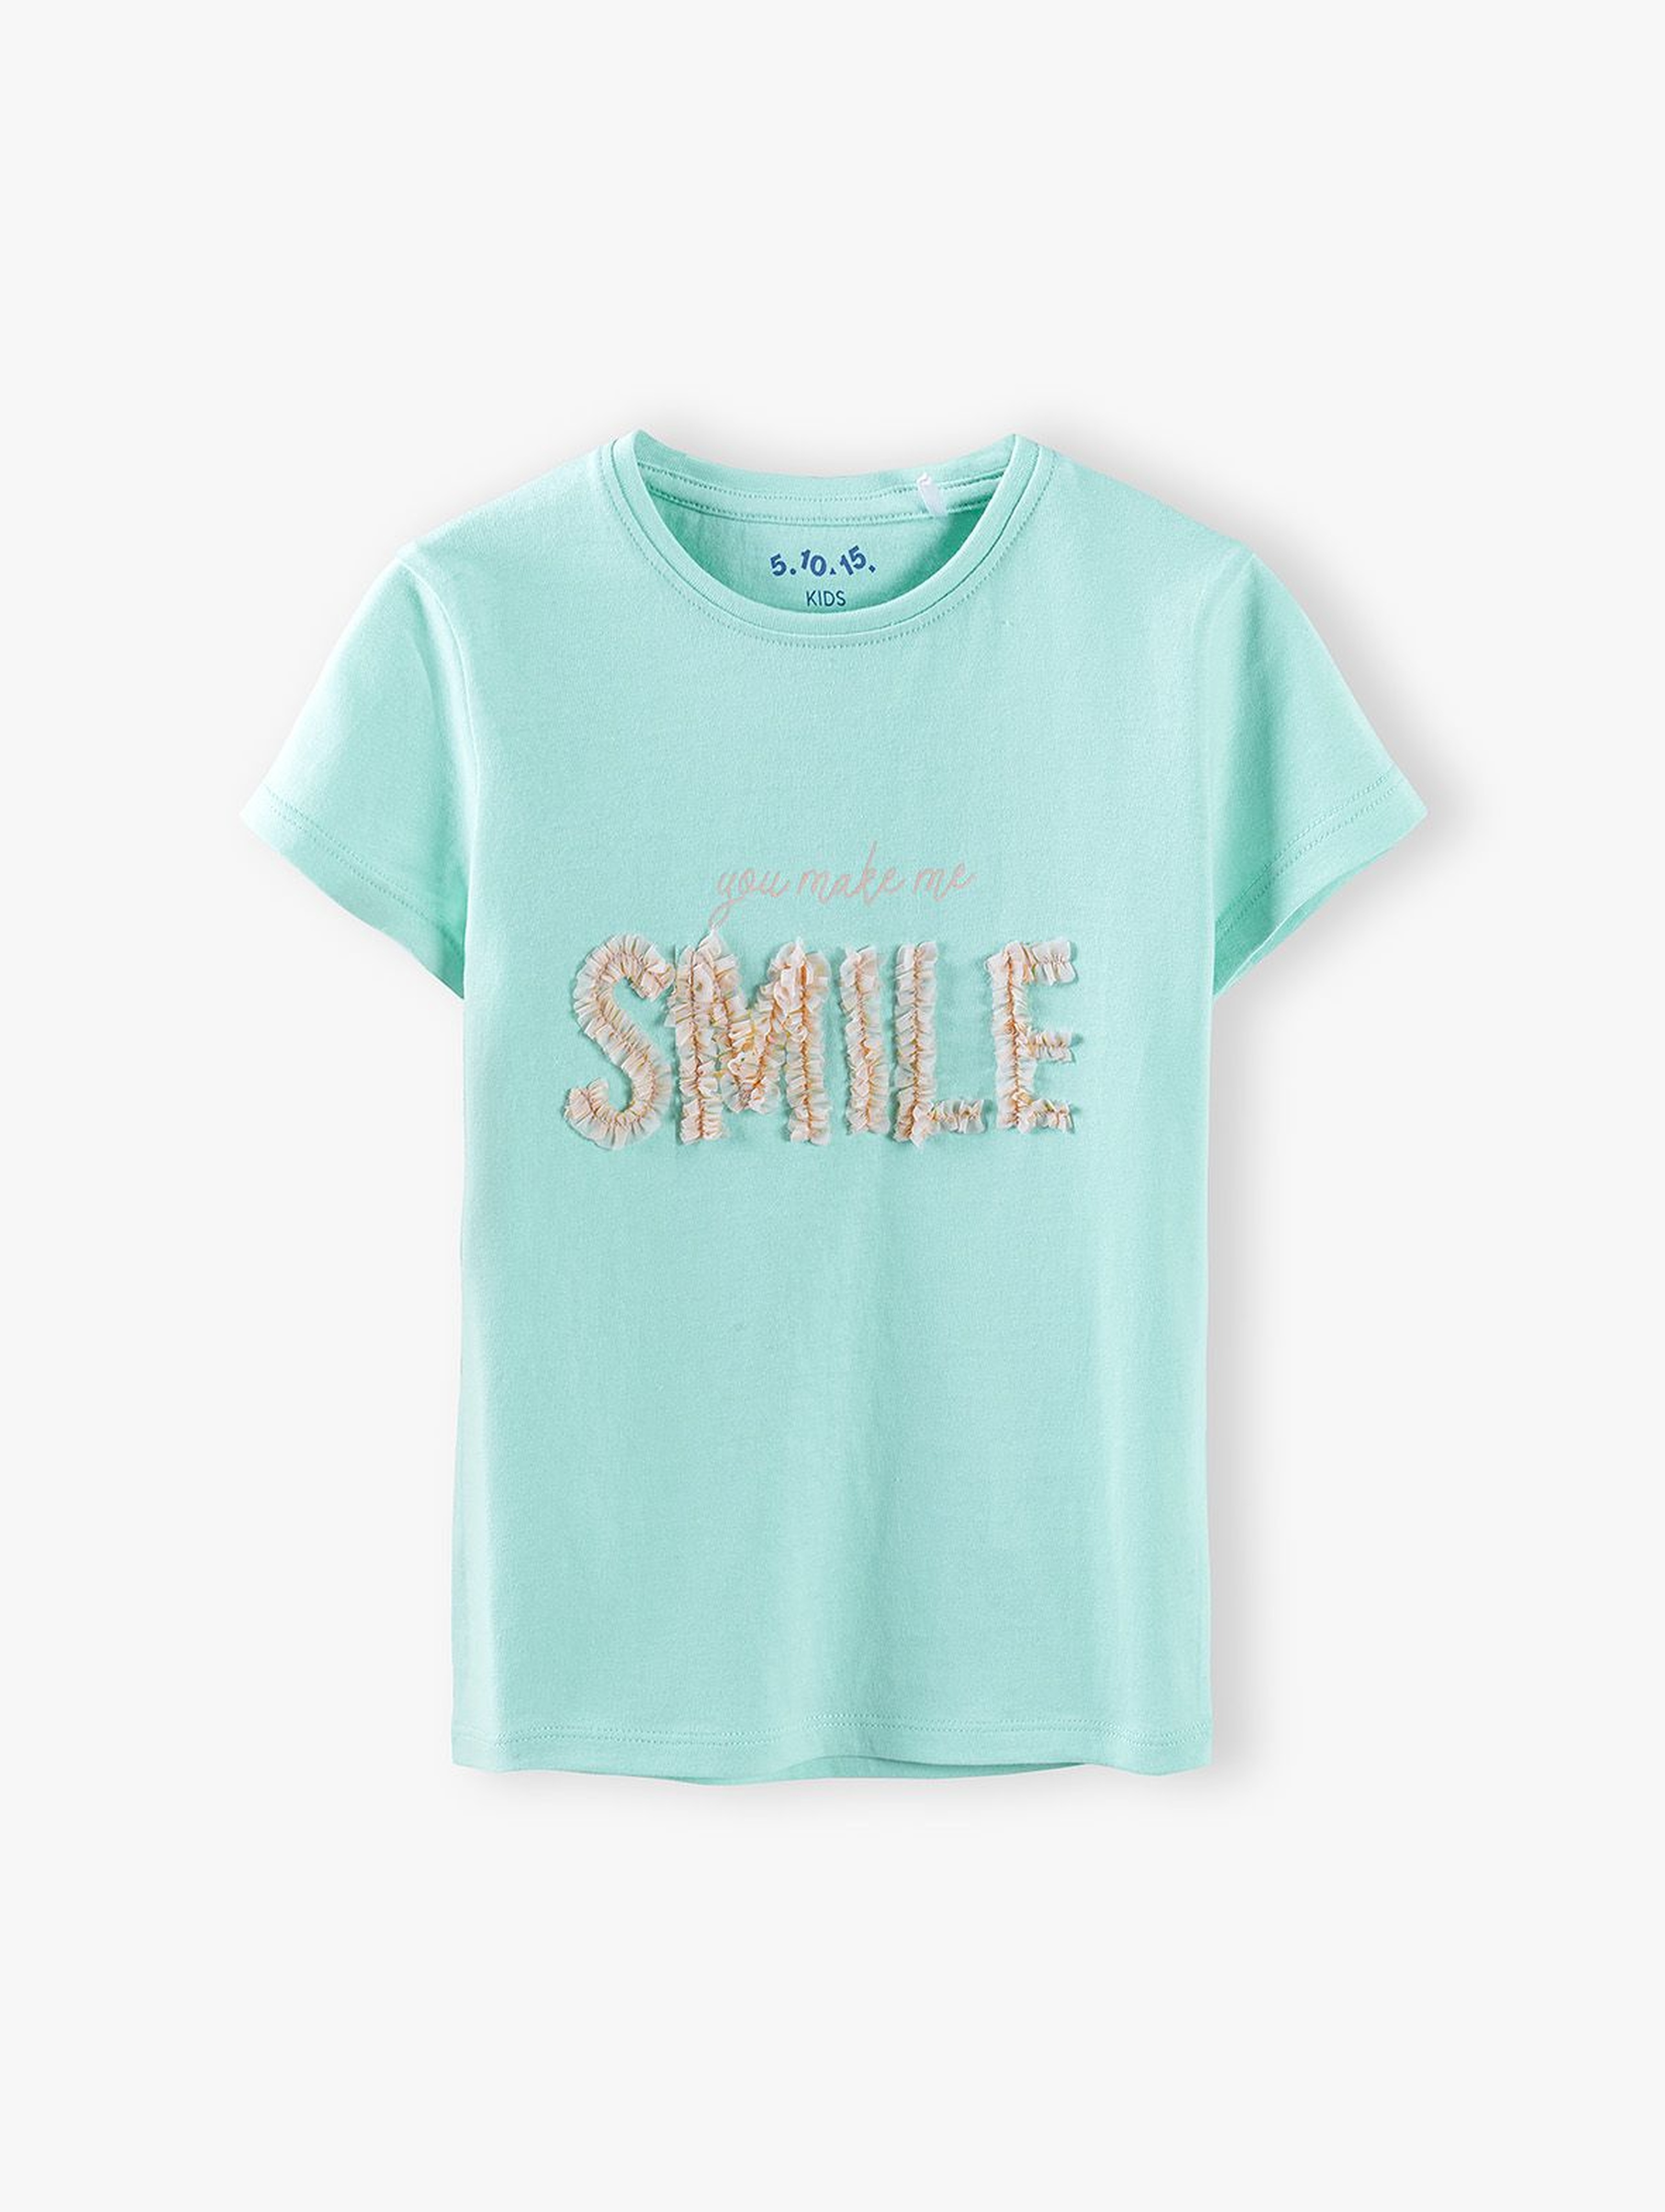 Bluzka dziewczęca z napisem Smile- niebieska